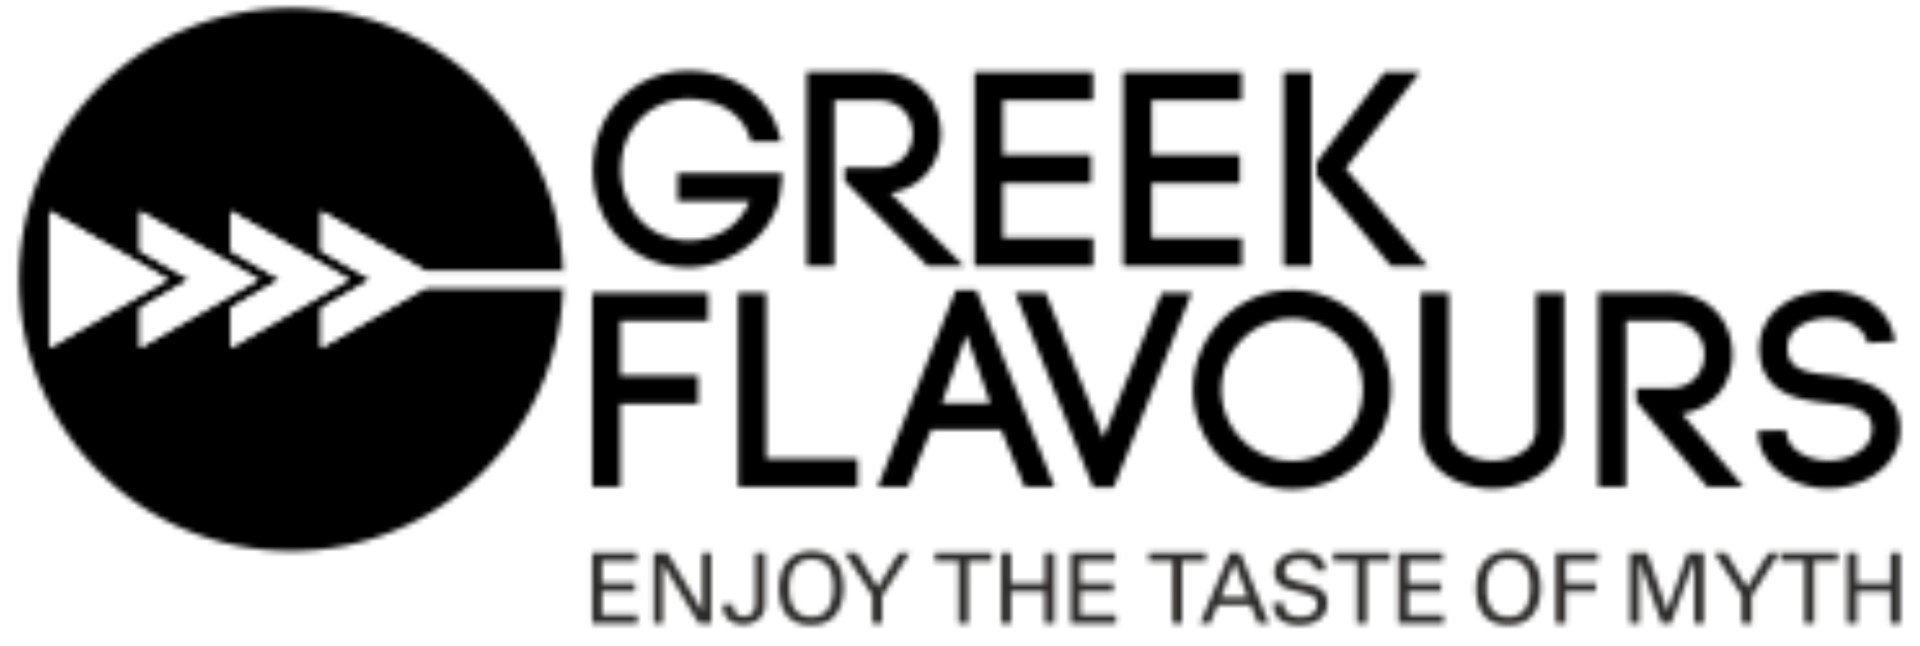 Greek Flavours EN logo